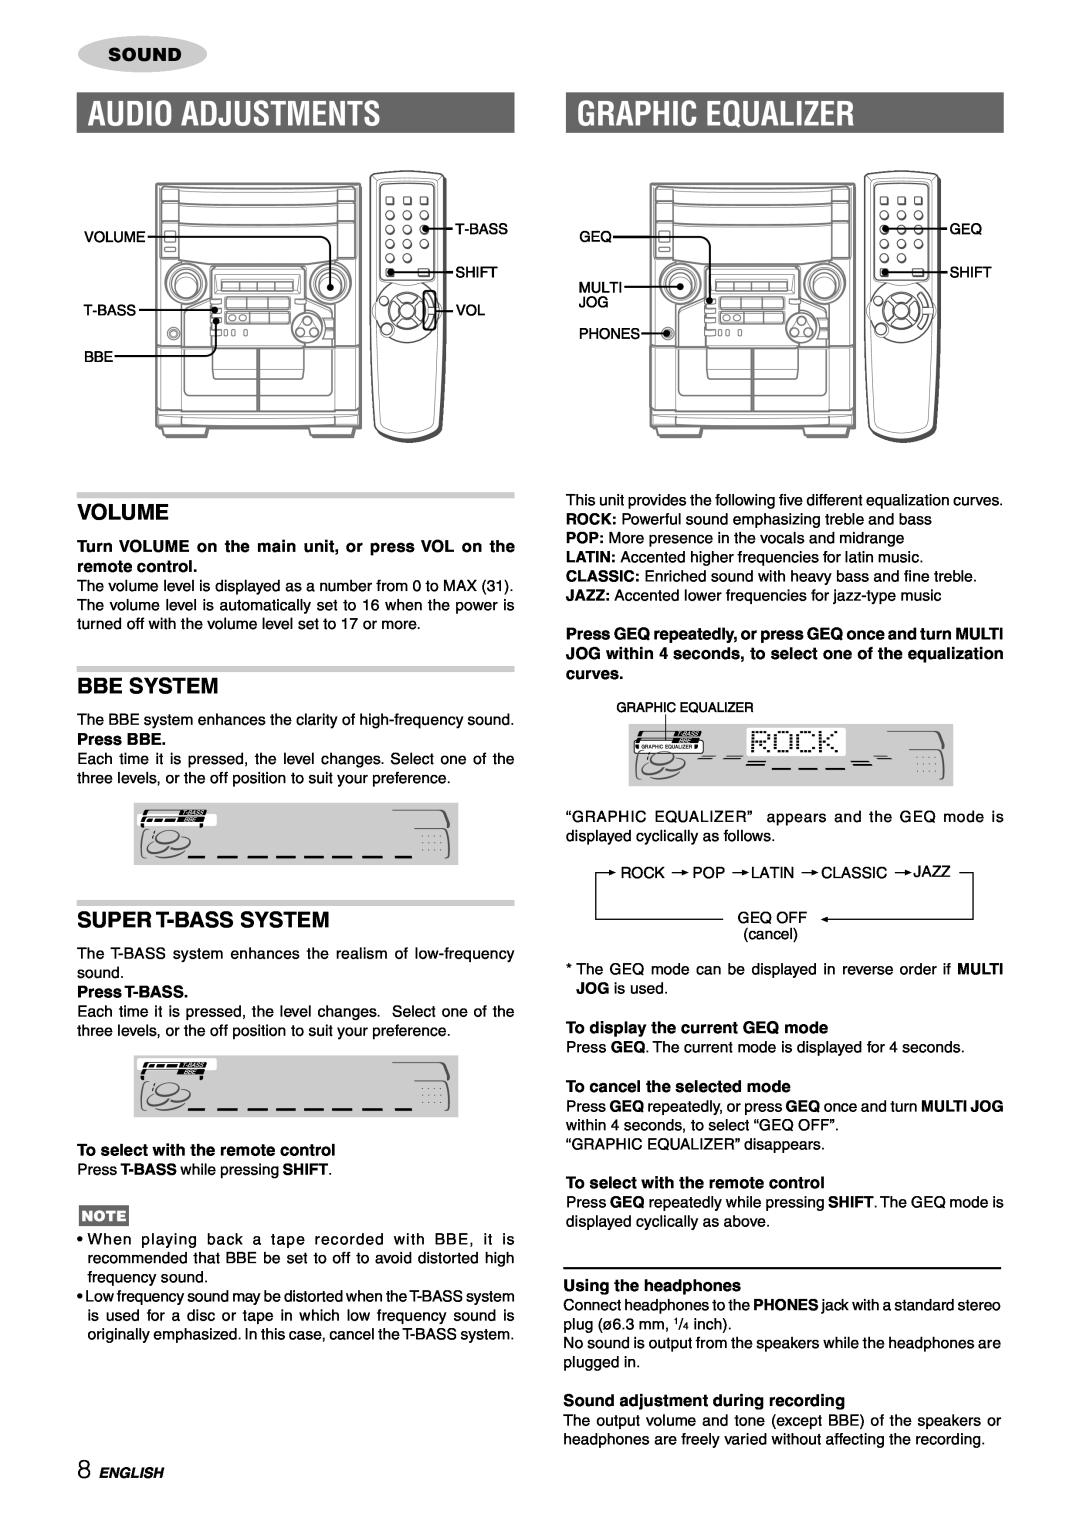 Aiwa CX-NAJ54 manual Audio Adjustments, Graphic Equalizer, Volume, Bbe System, Super T-Basssystem, Press BBE, Press T-BASS 